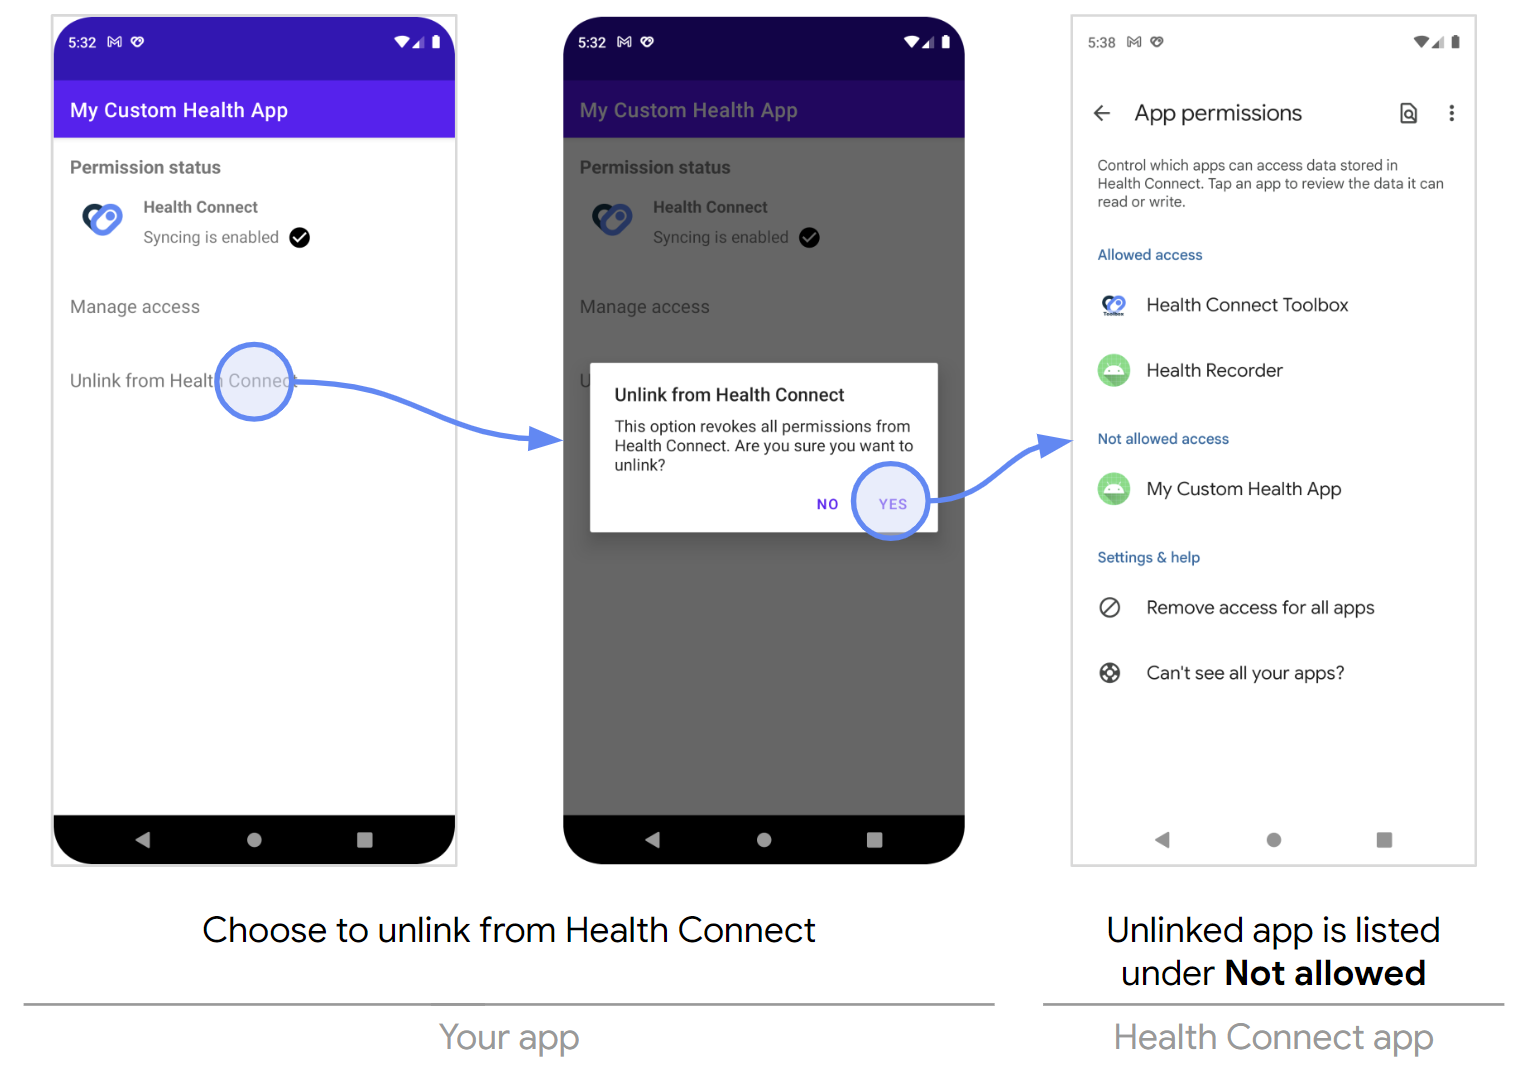 Huỷ liên kết với Health Connect thông qua ứng dụng của bạn